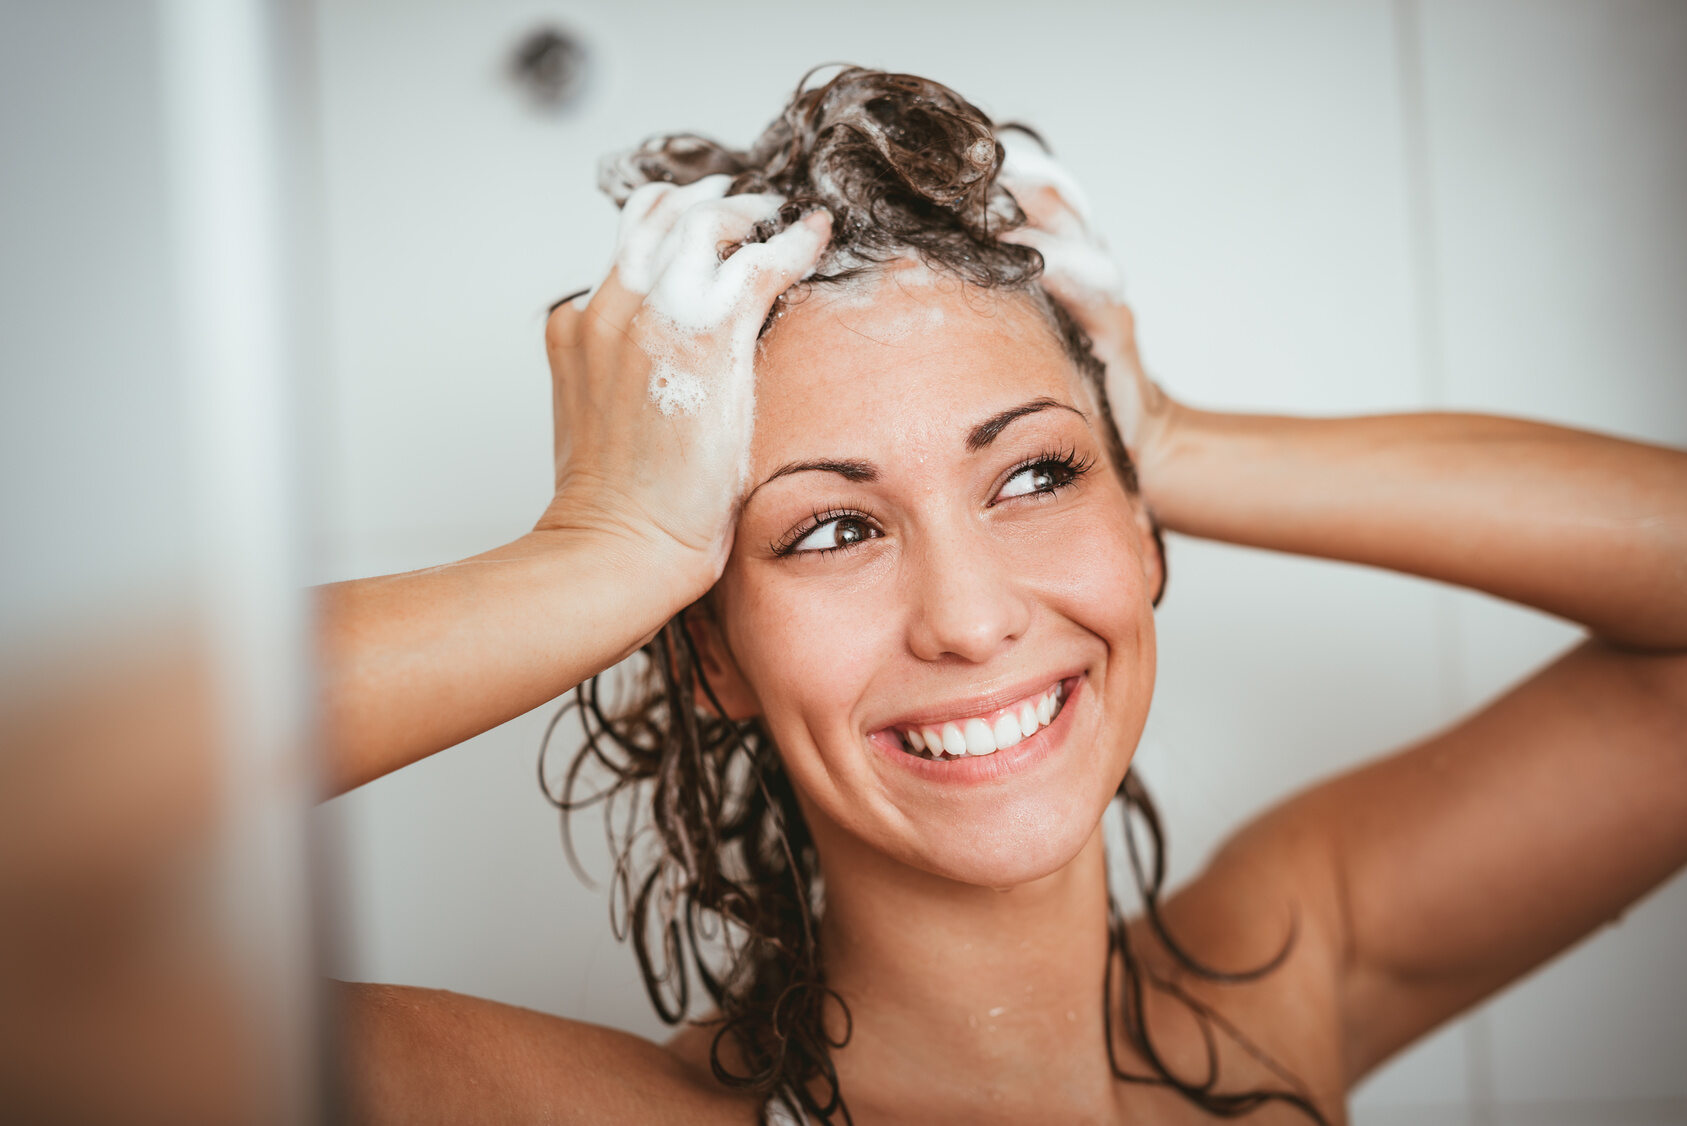 Частое мытье волос